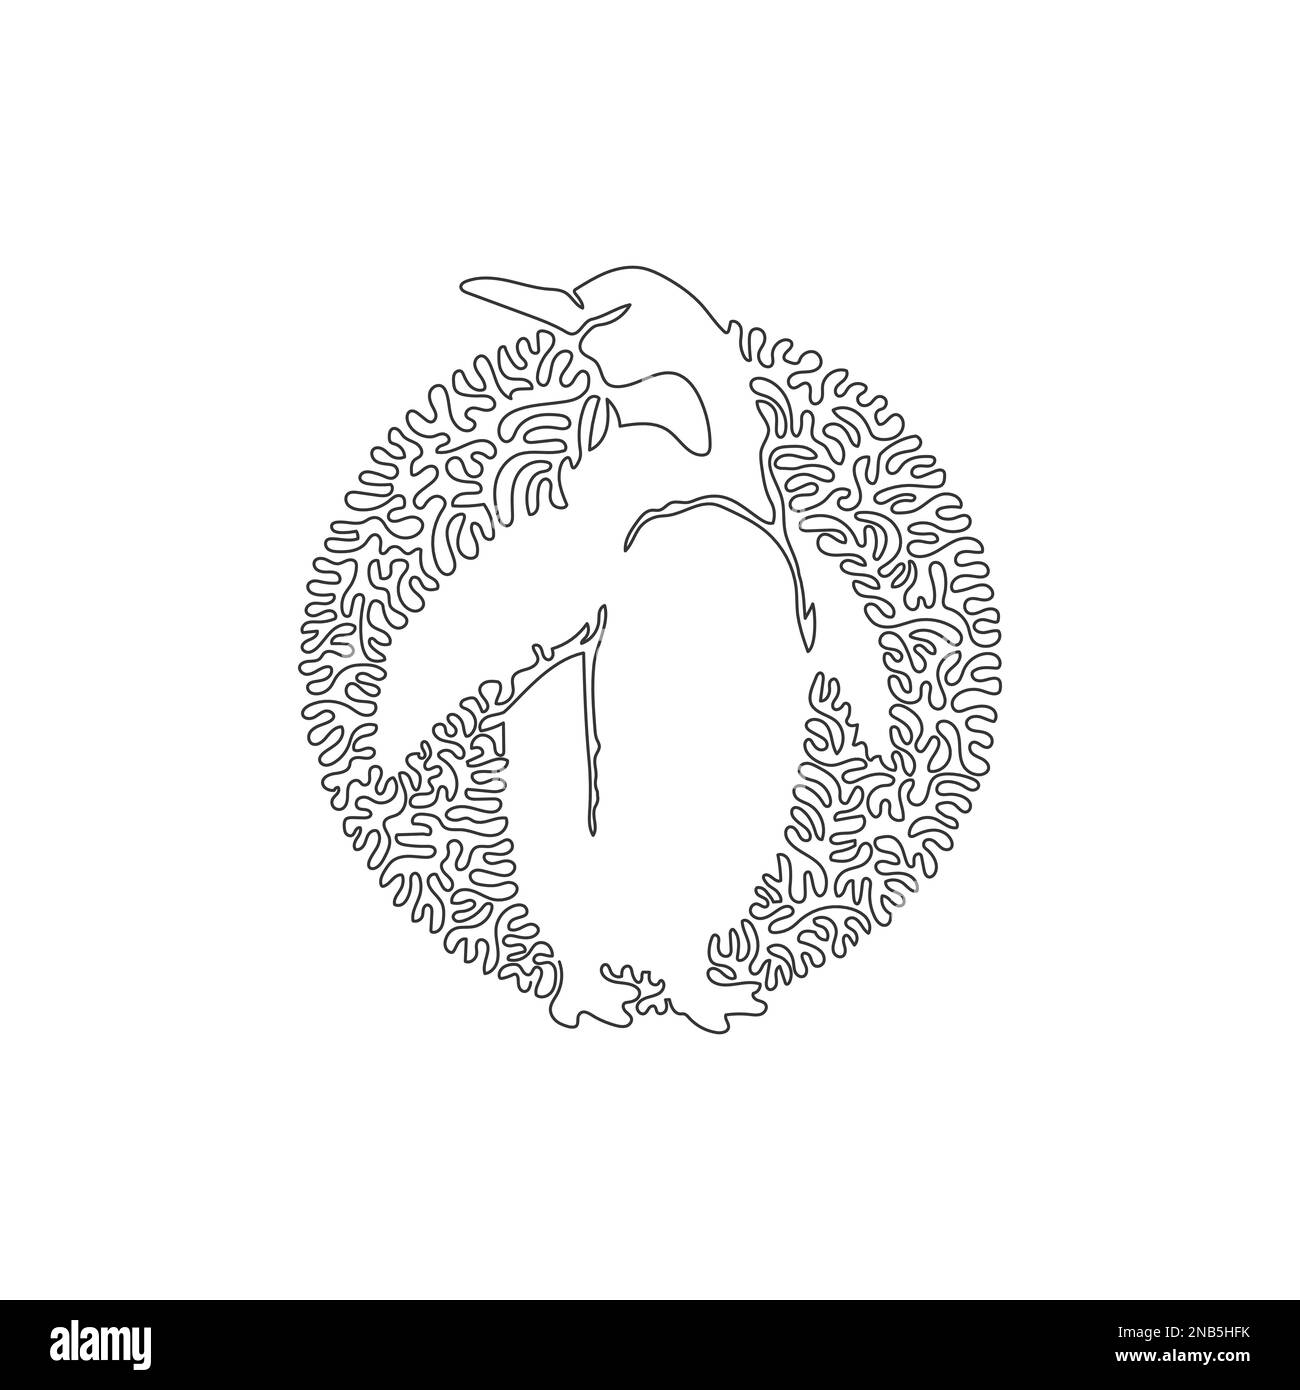 Linea continua a spirale singola che traccia l'arte astratta del pinguino in piedi. Linea continua disegno grafico vettore illustrazione stile di pinguino carino Illustrazione Vettoriale